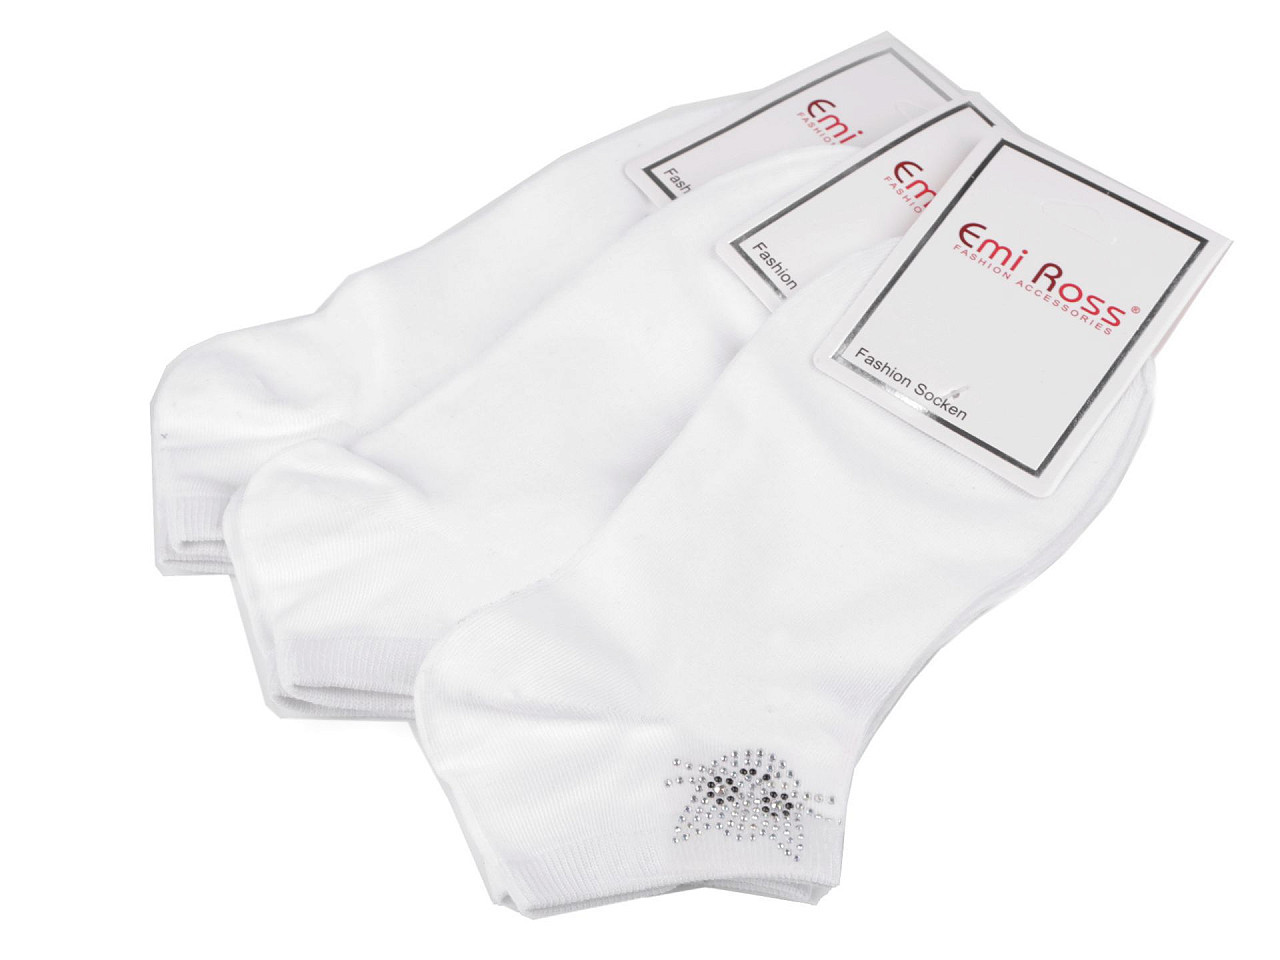 Dámské bavlněné ponožky kotníkové s kamínky Emi Ross, barva 55 (35-38) bílá